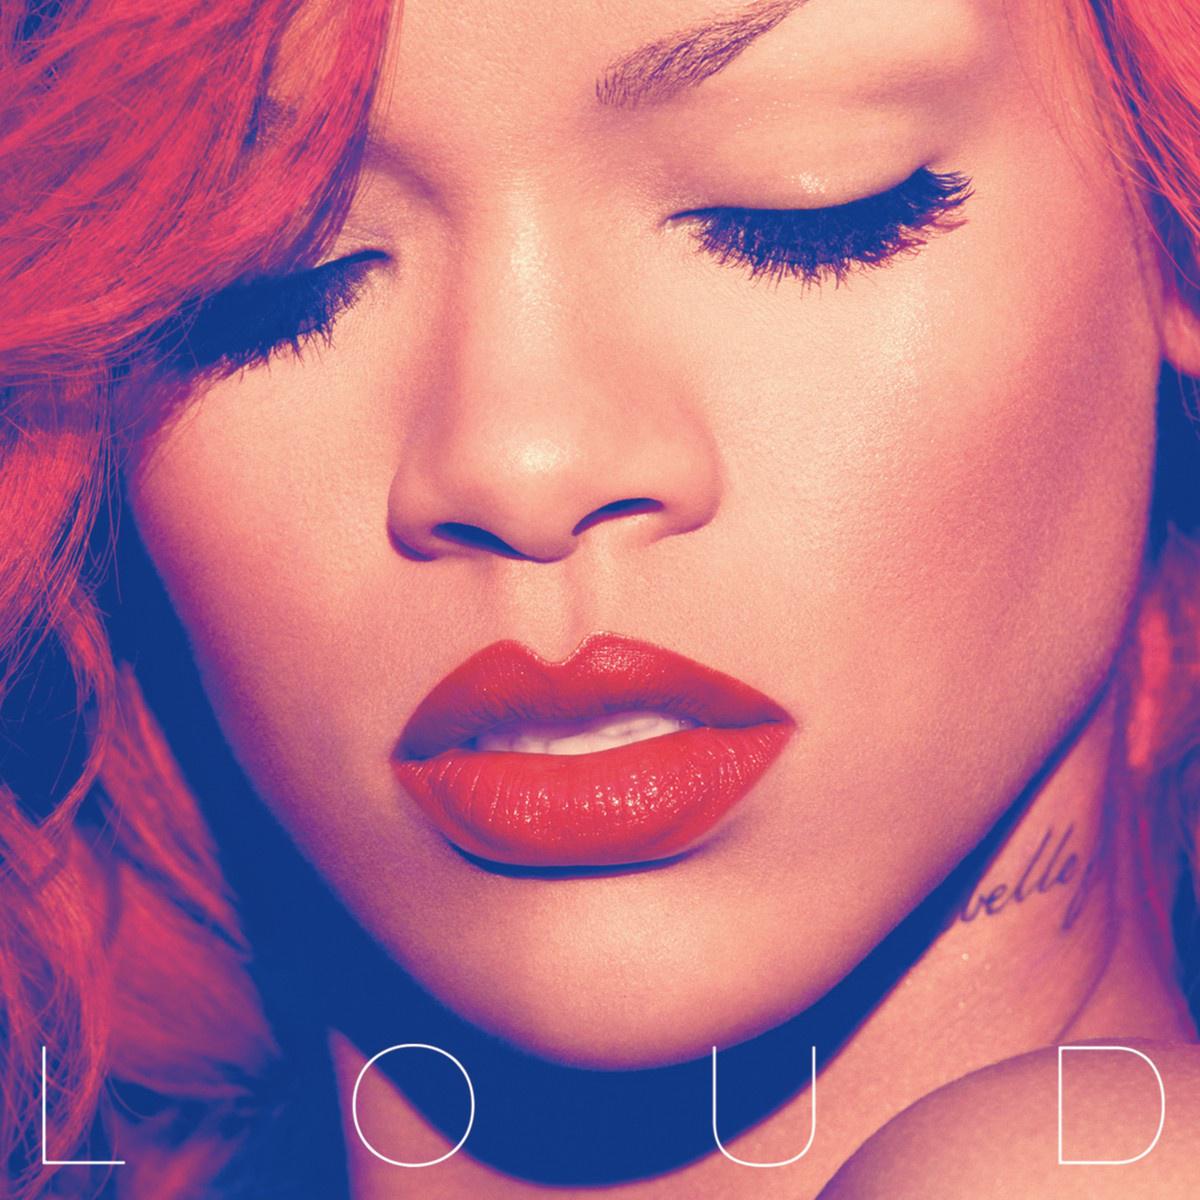 S&M歌词 歌手Rihanna-专辑Loud-单曲《S&M》LRC歌词下载